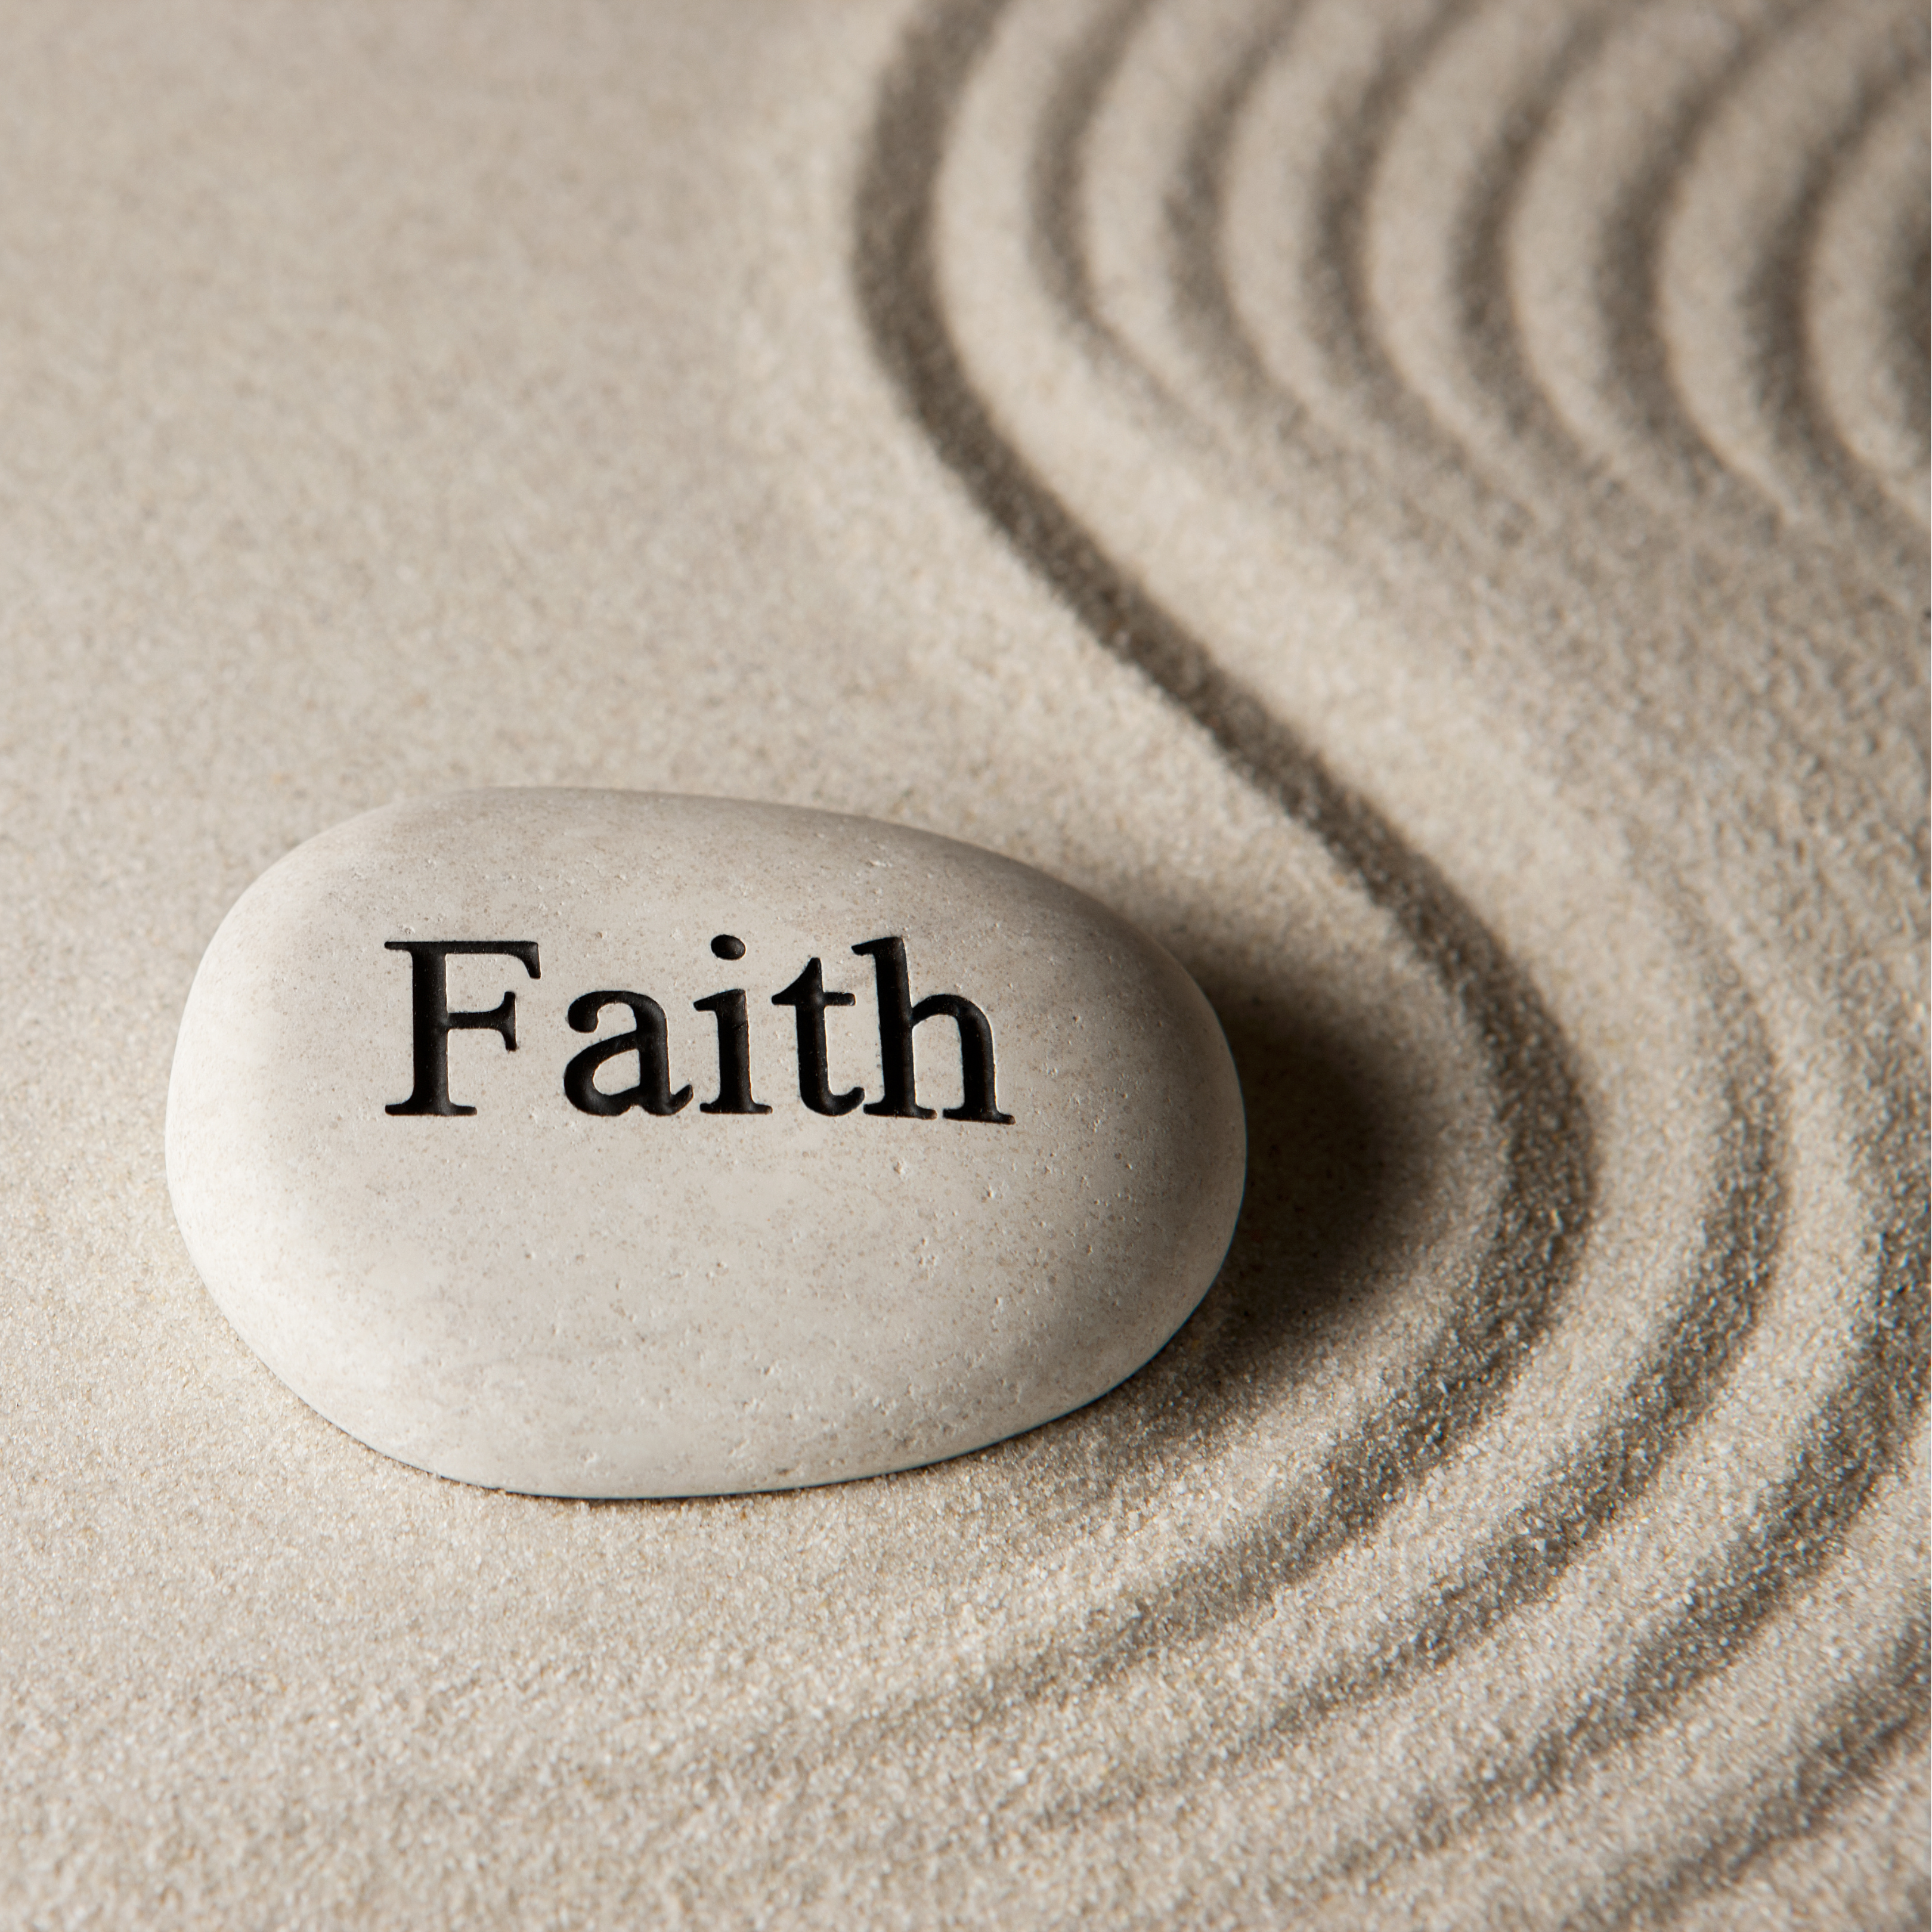 Faith stone